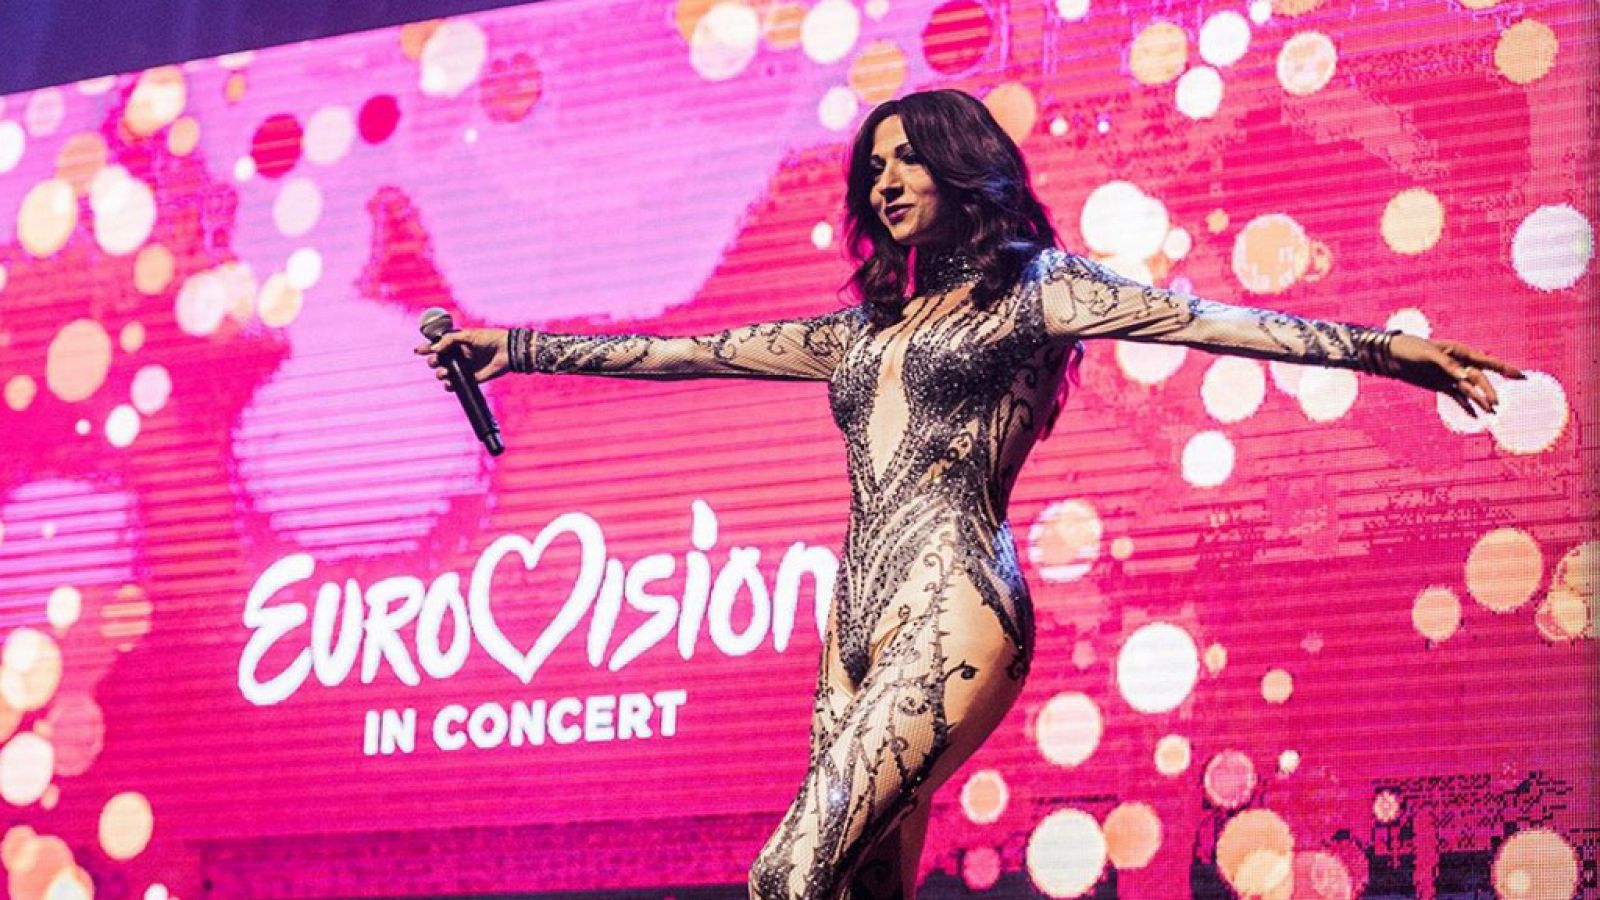 Eurovisión 2019 - Dana International canta "Diva" en Ámsterdam